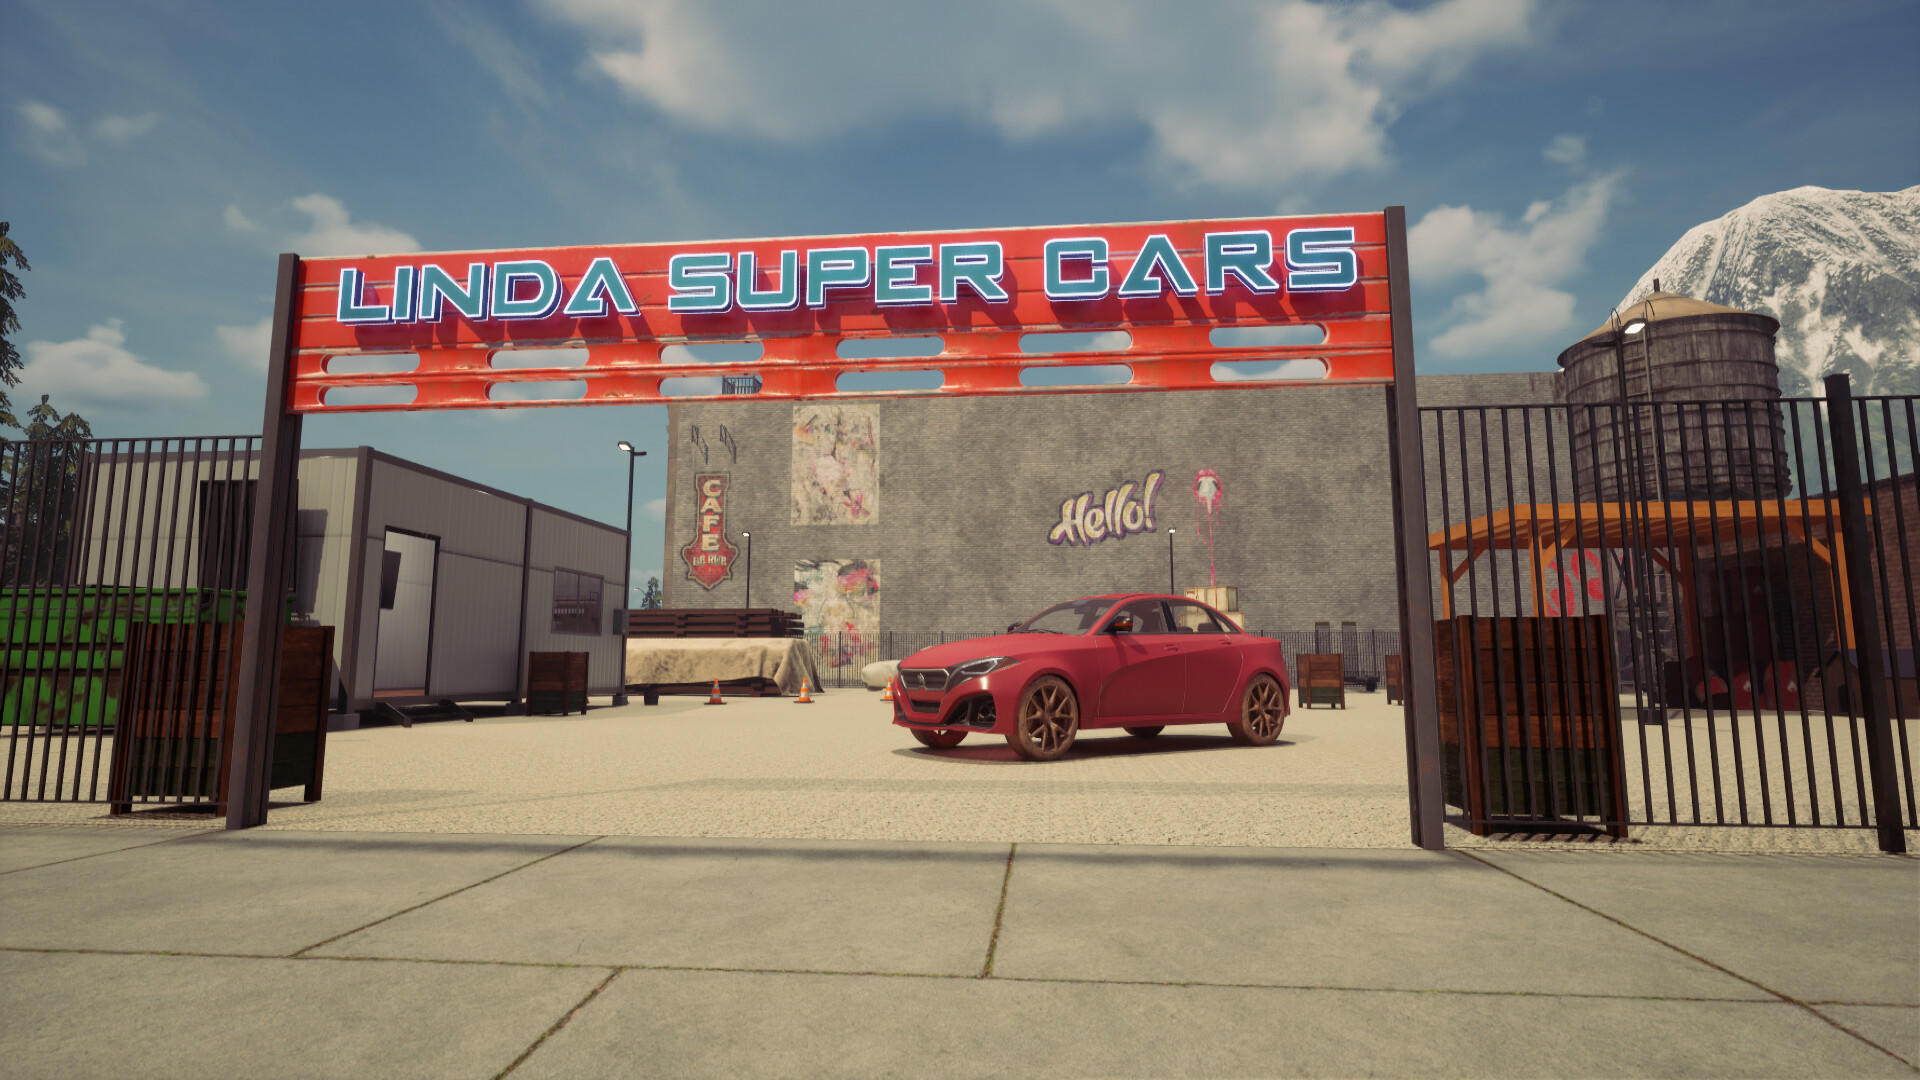 Online Car Simulator screenshot game